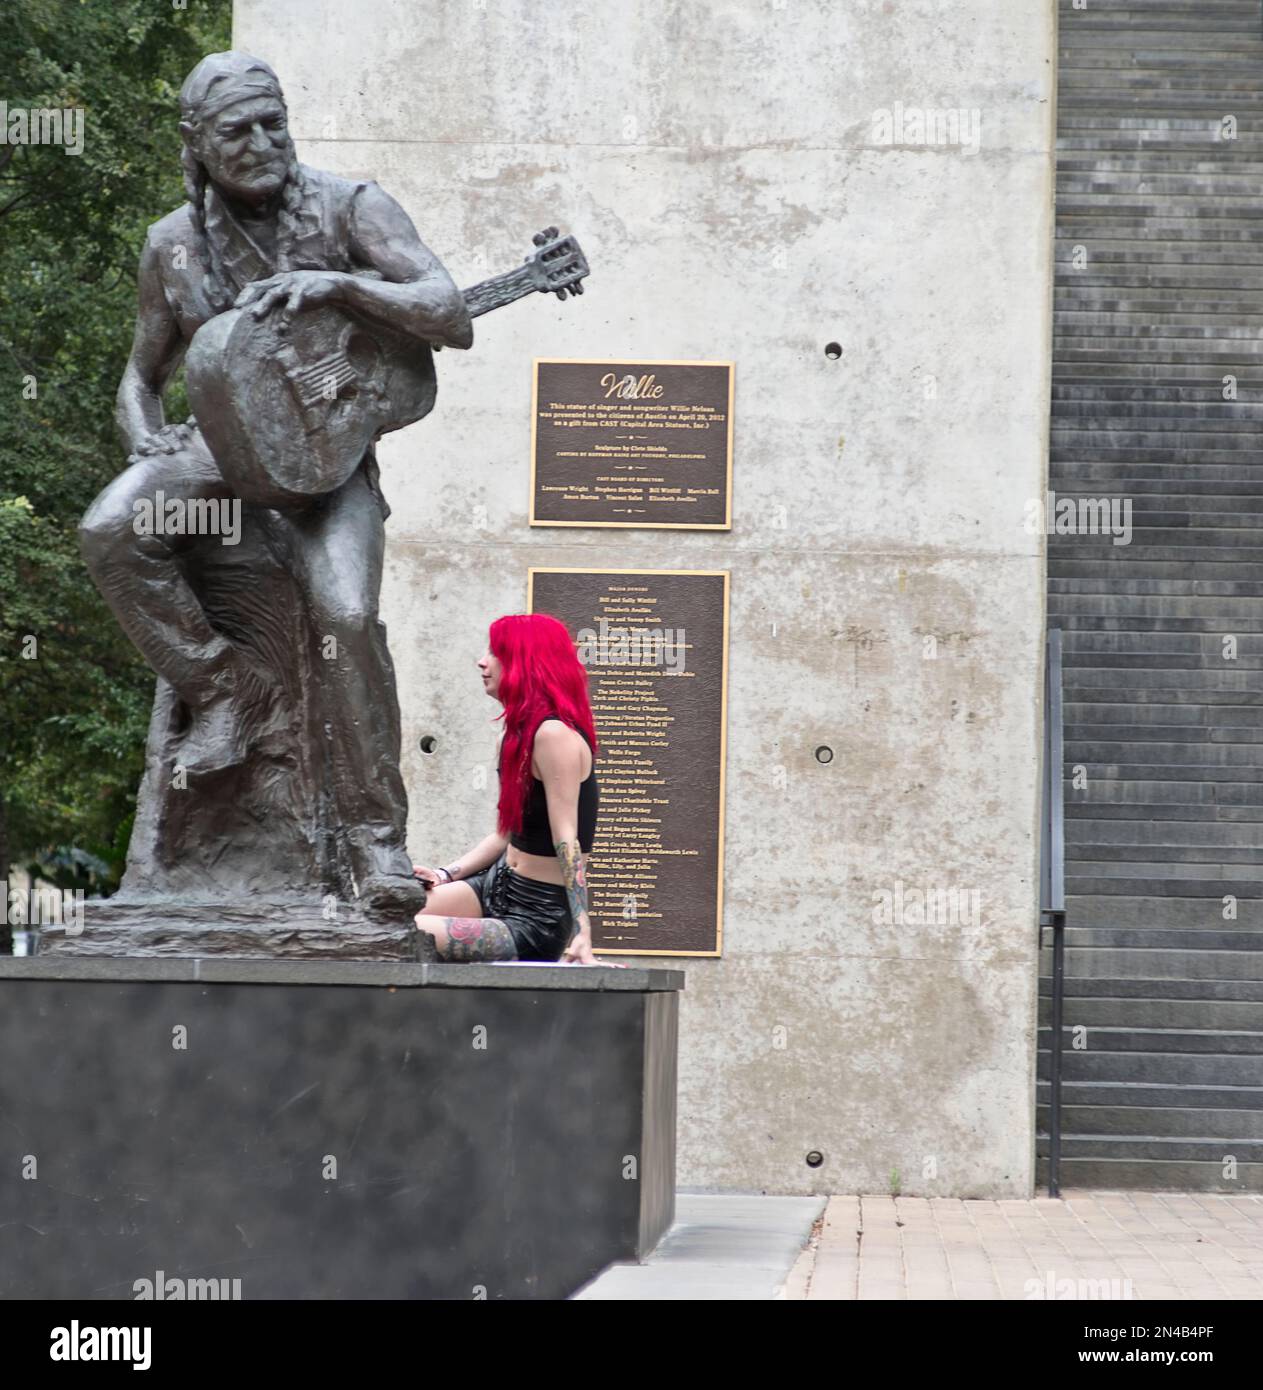 Ein Mädchen im Teenageralter mit gefärbtem magentafarbenem Haar und Ledershorts sitzt am Fuß der Willie Nelson Statue in Austin, Texas Stockfoto